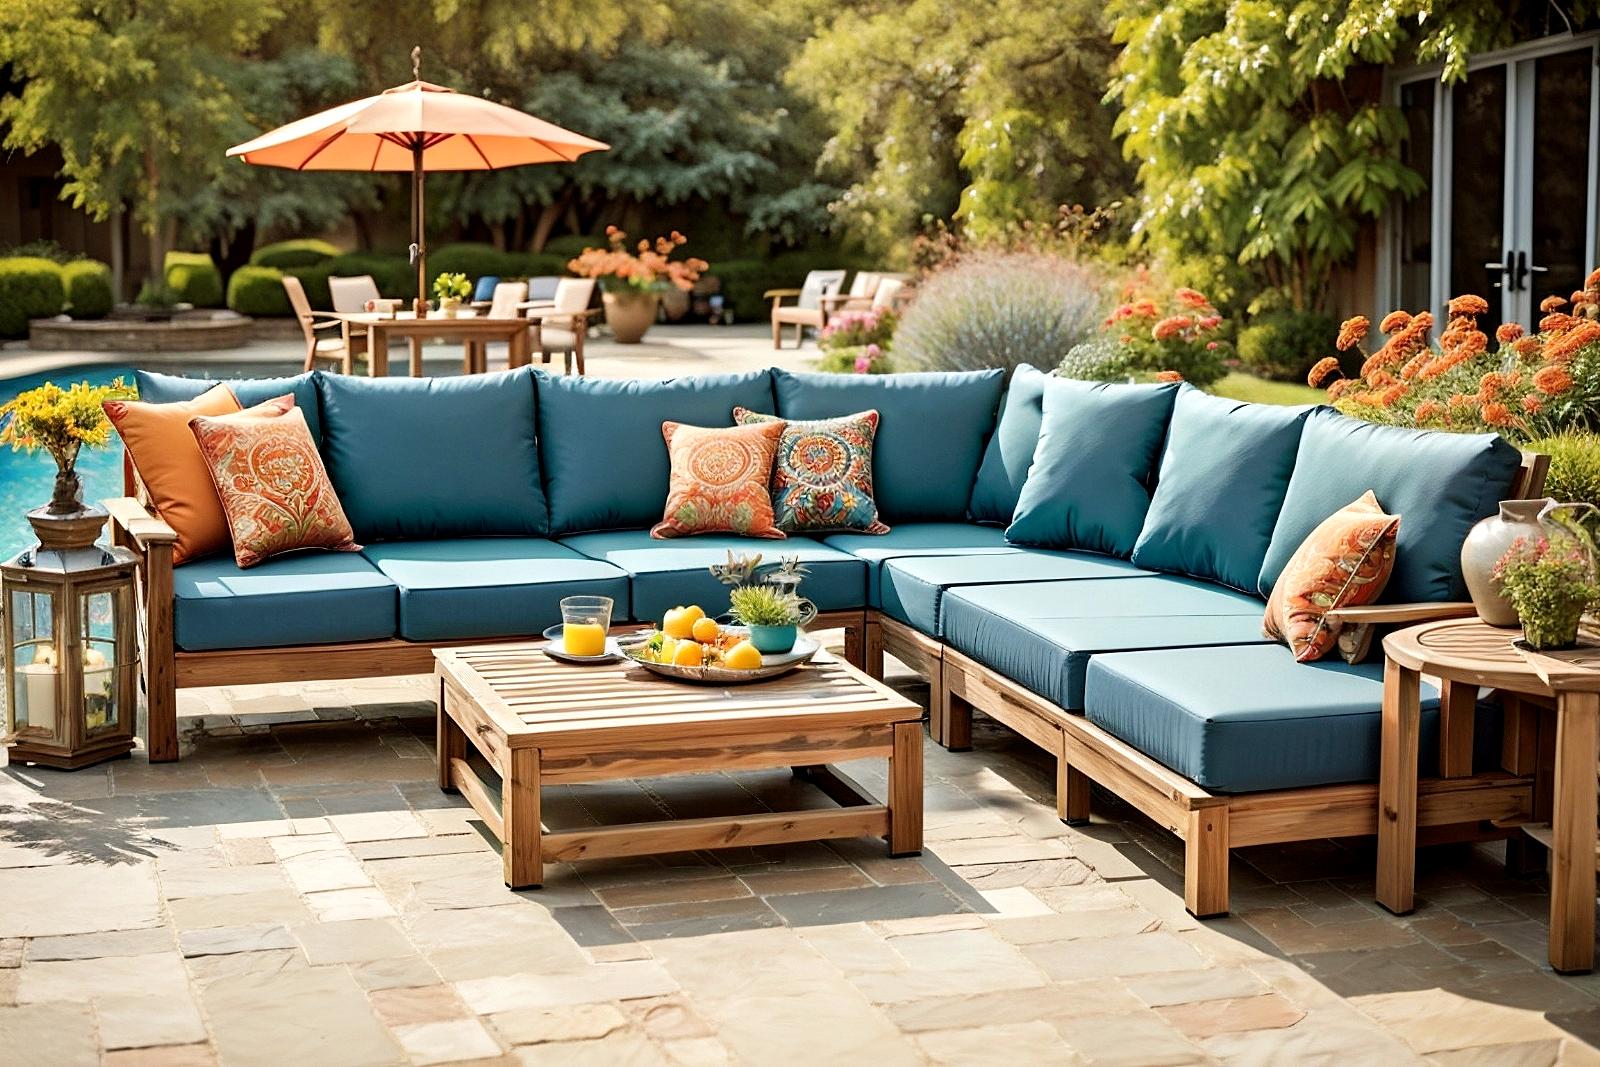 Outdoor Patio Furniture Benefits